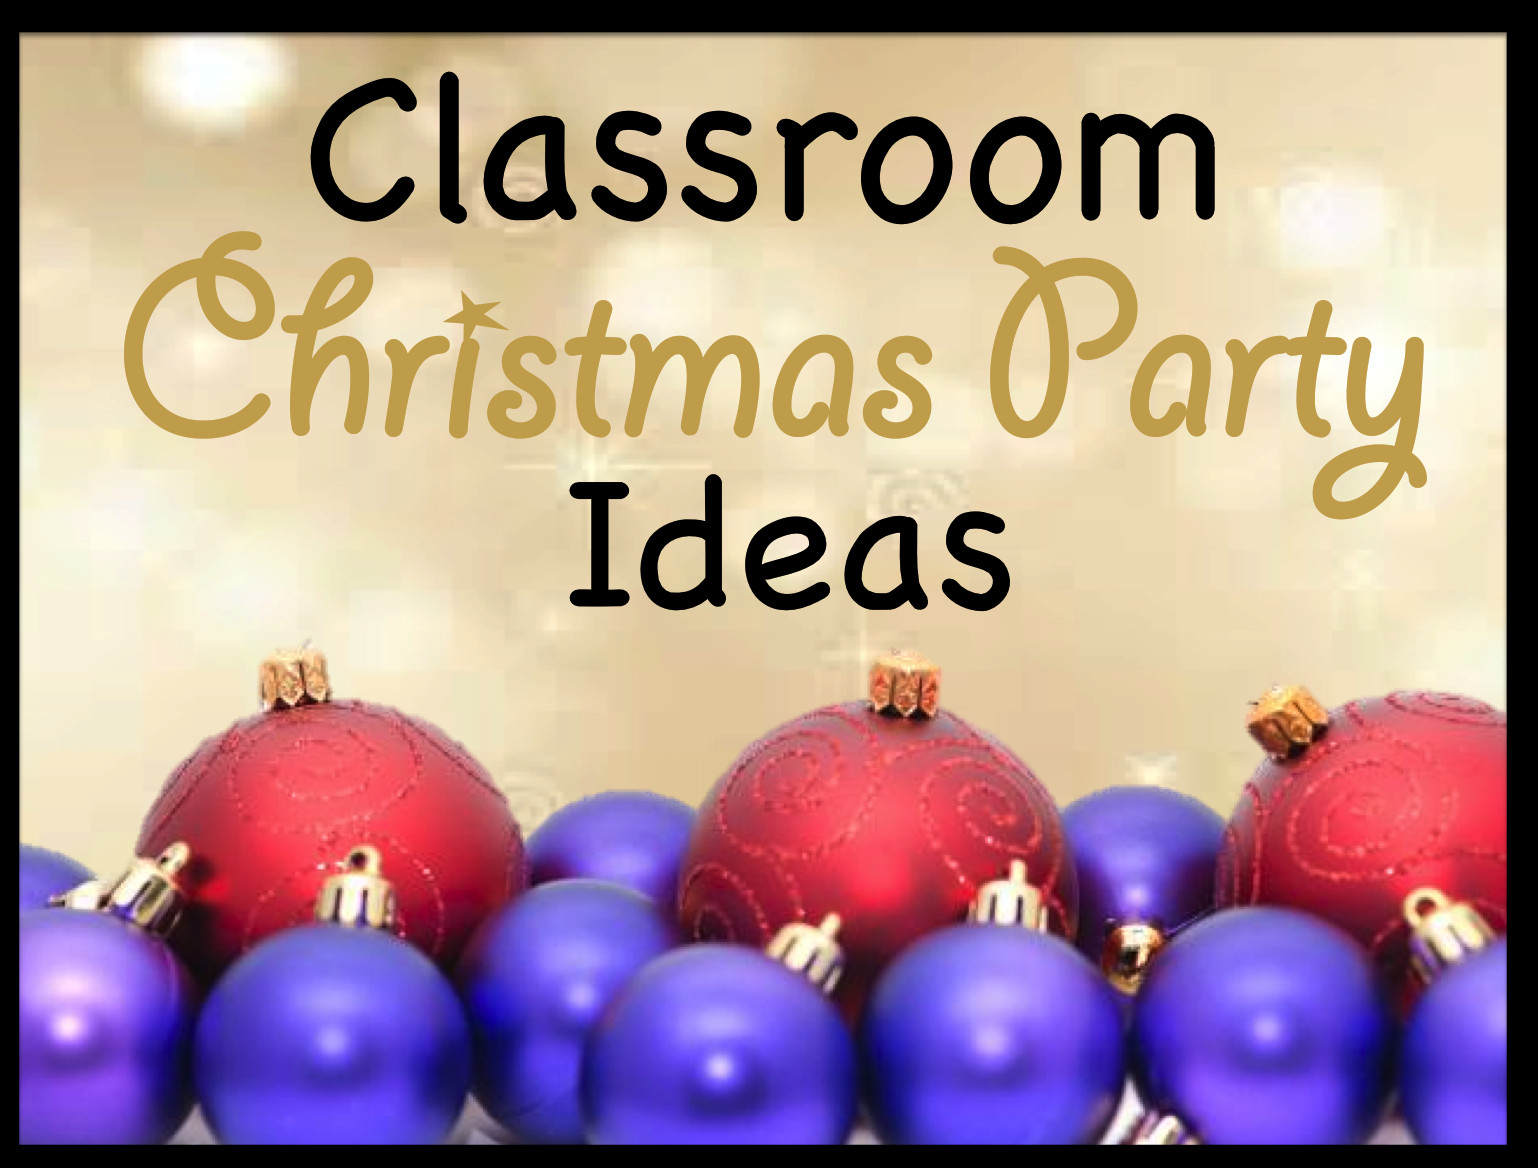 Classroom Christmas Party Ideas
 Your Teacher s Aide Classroom Christmas Party Ideas Games